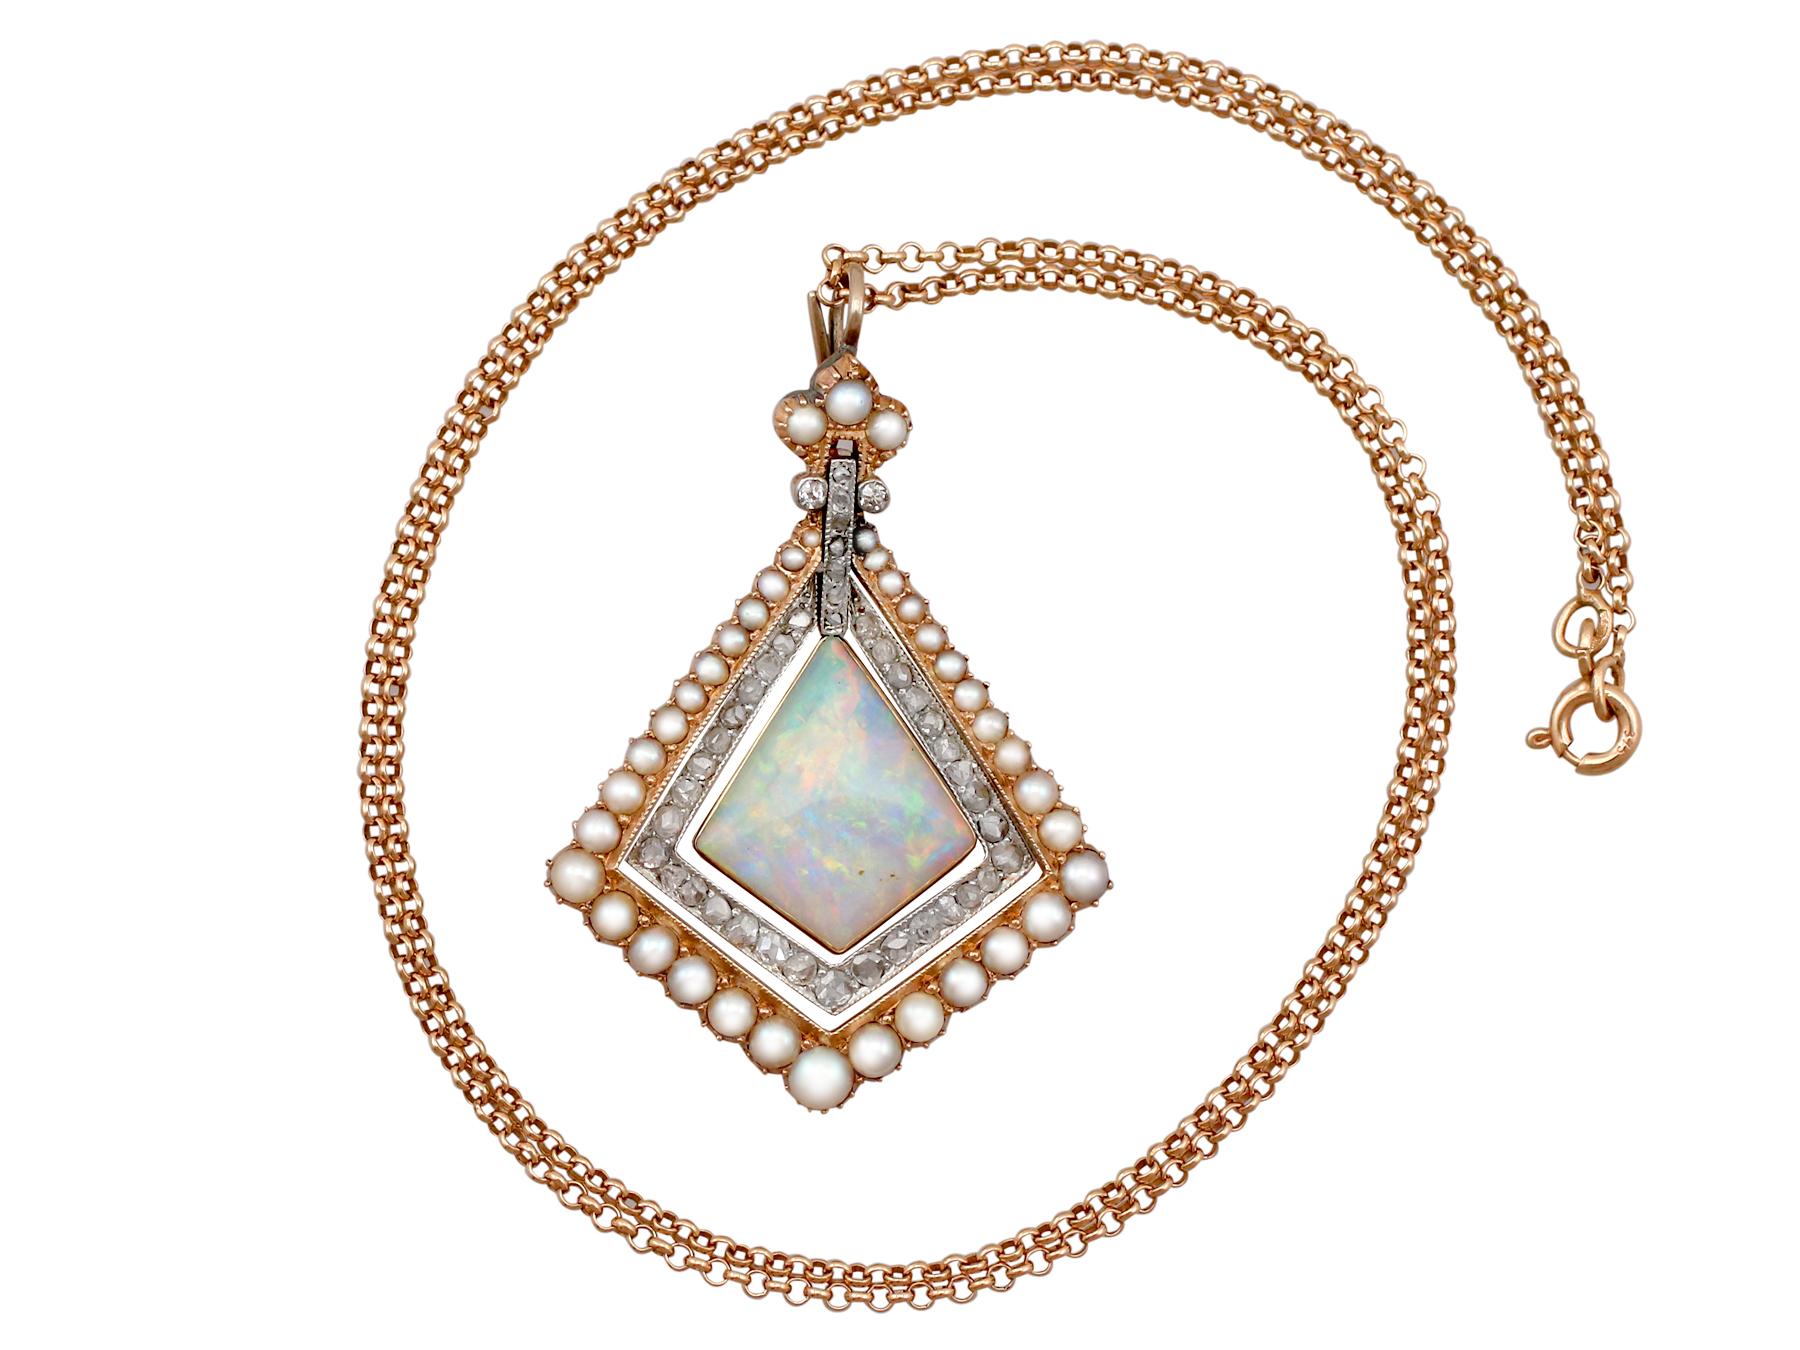 Superbe pendentif ancien en opale de 2,88 carats, diamant de 0,84 carat, perle de rocaille, or jaune et blanc de 15 carats et chaîne en or jaune de 9 carats, faisant partie de nos diverses collections de bijoux anciens.

Cette perle étonnante, fine